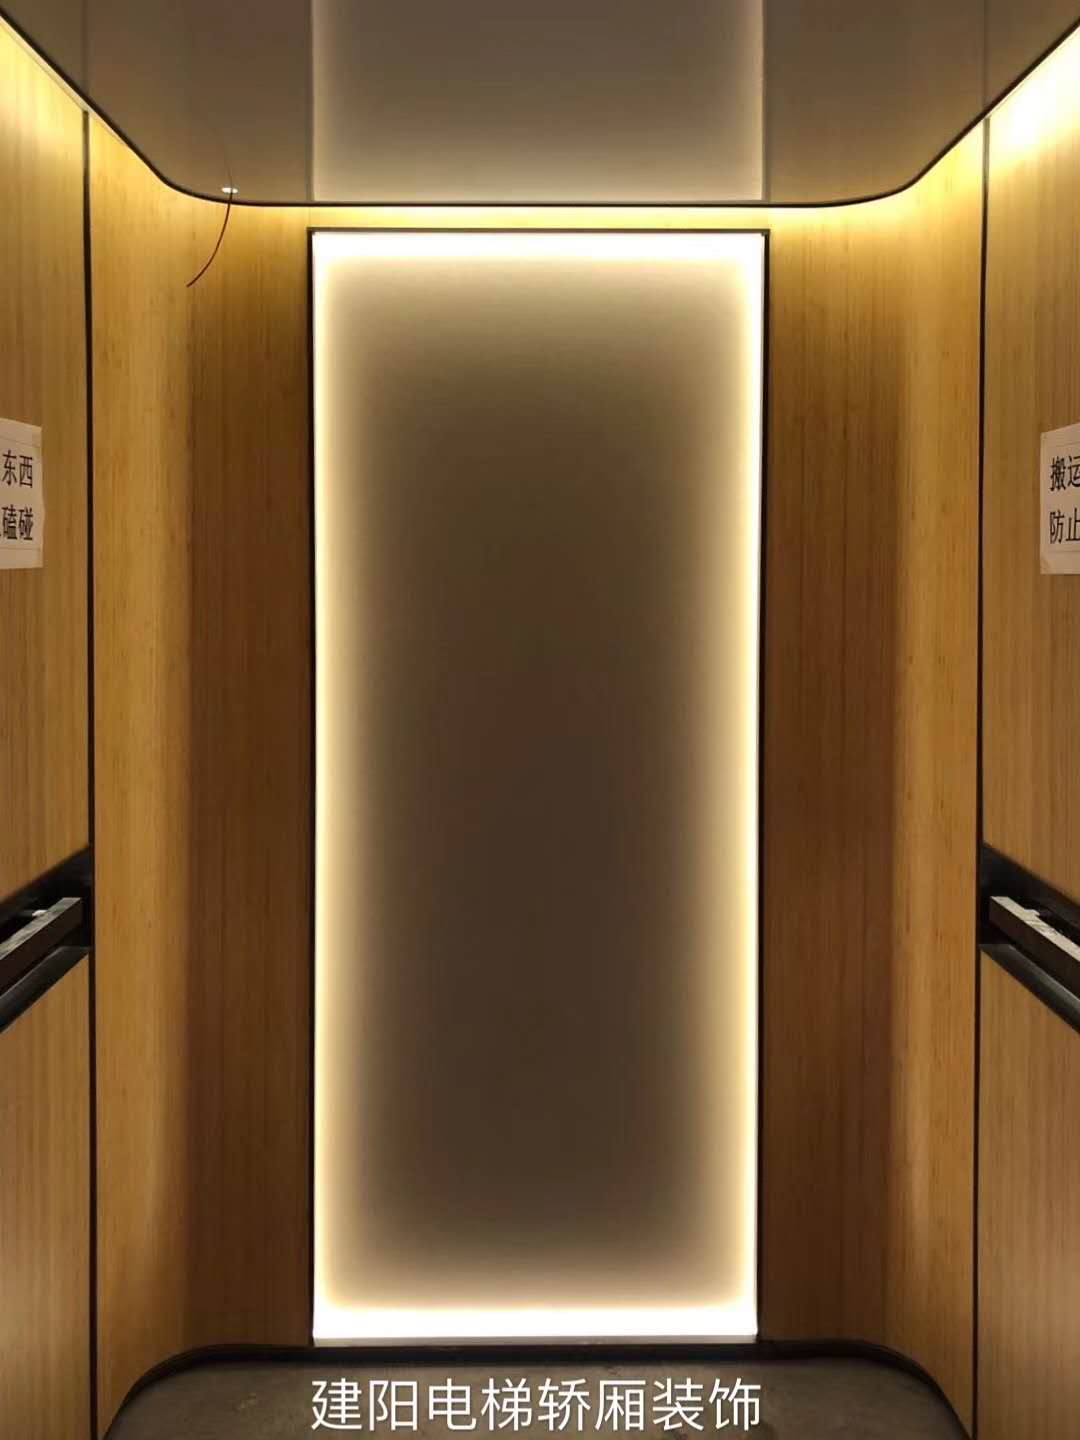 建阳电梯轿厢装饰 - 电梯装修,电梯装饰,电梯装潢